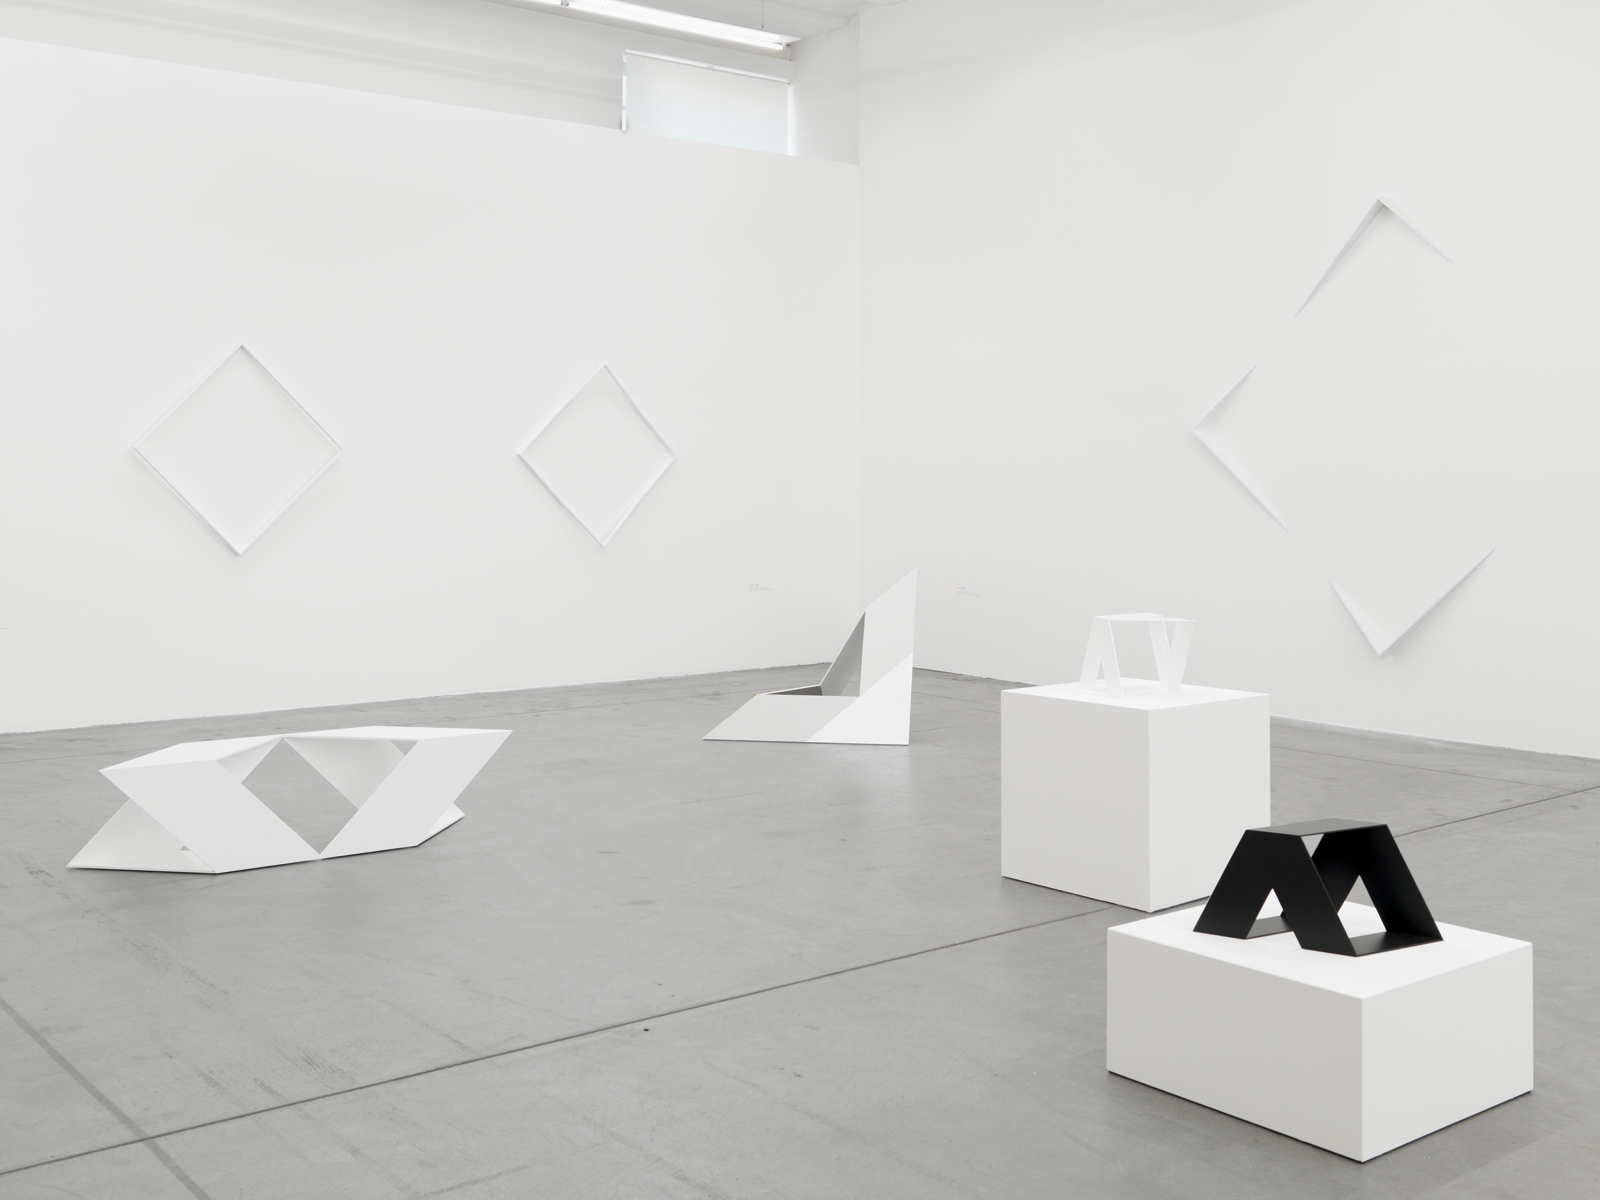 Nelly Rudin / "Open Space", exhibition view, Haus Konstruktiv, Zürich  / 2011